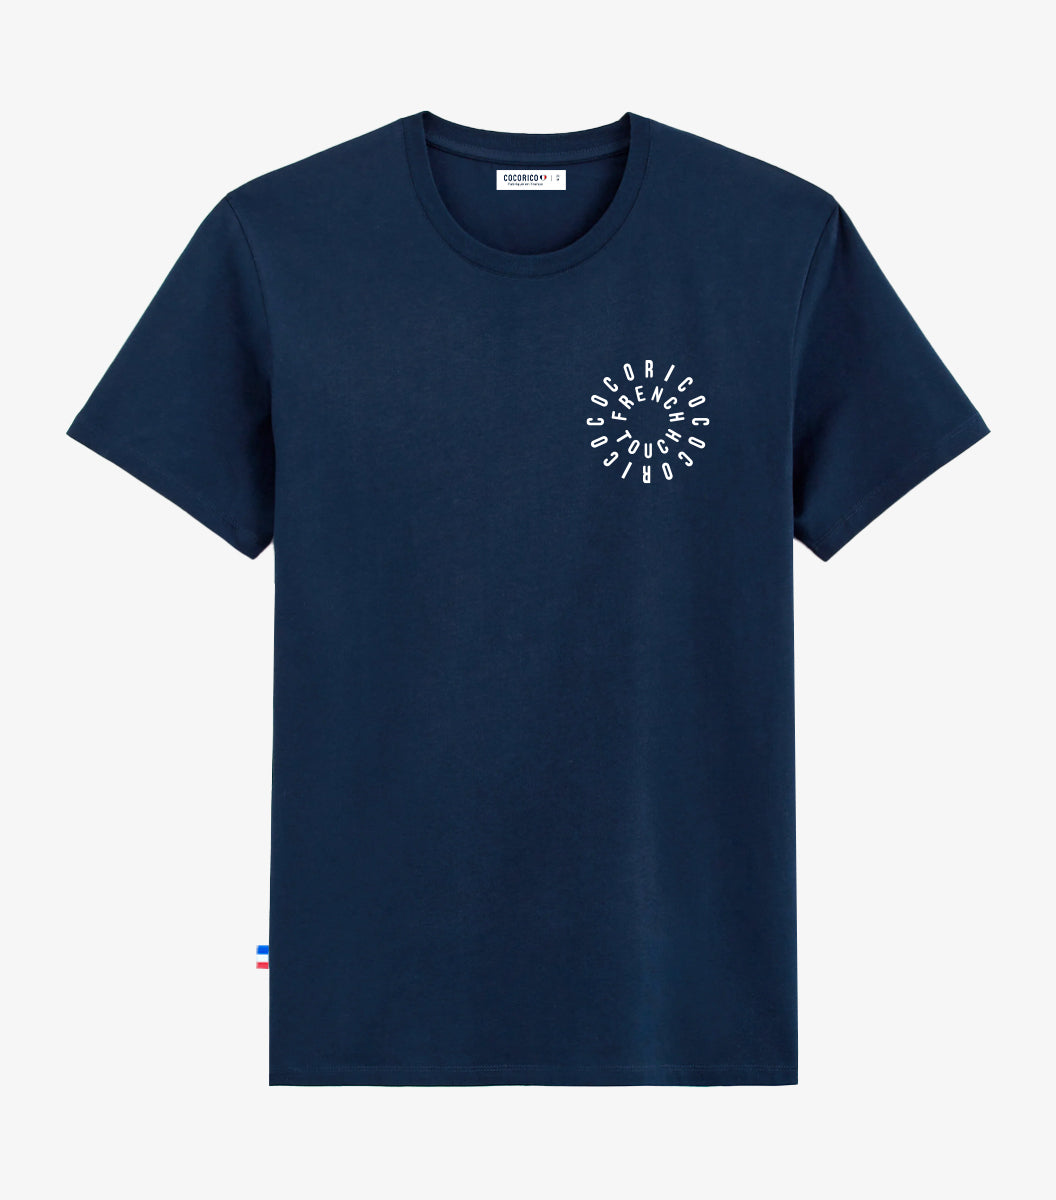 T-shirt Homme Marine - Le Cercle